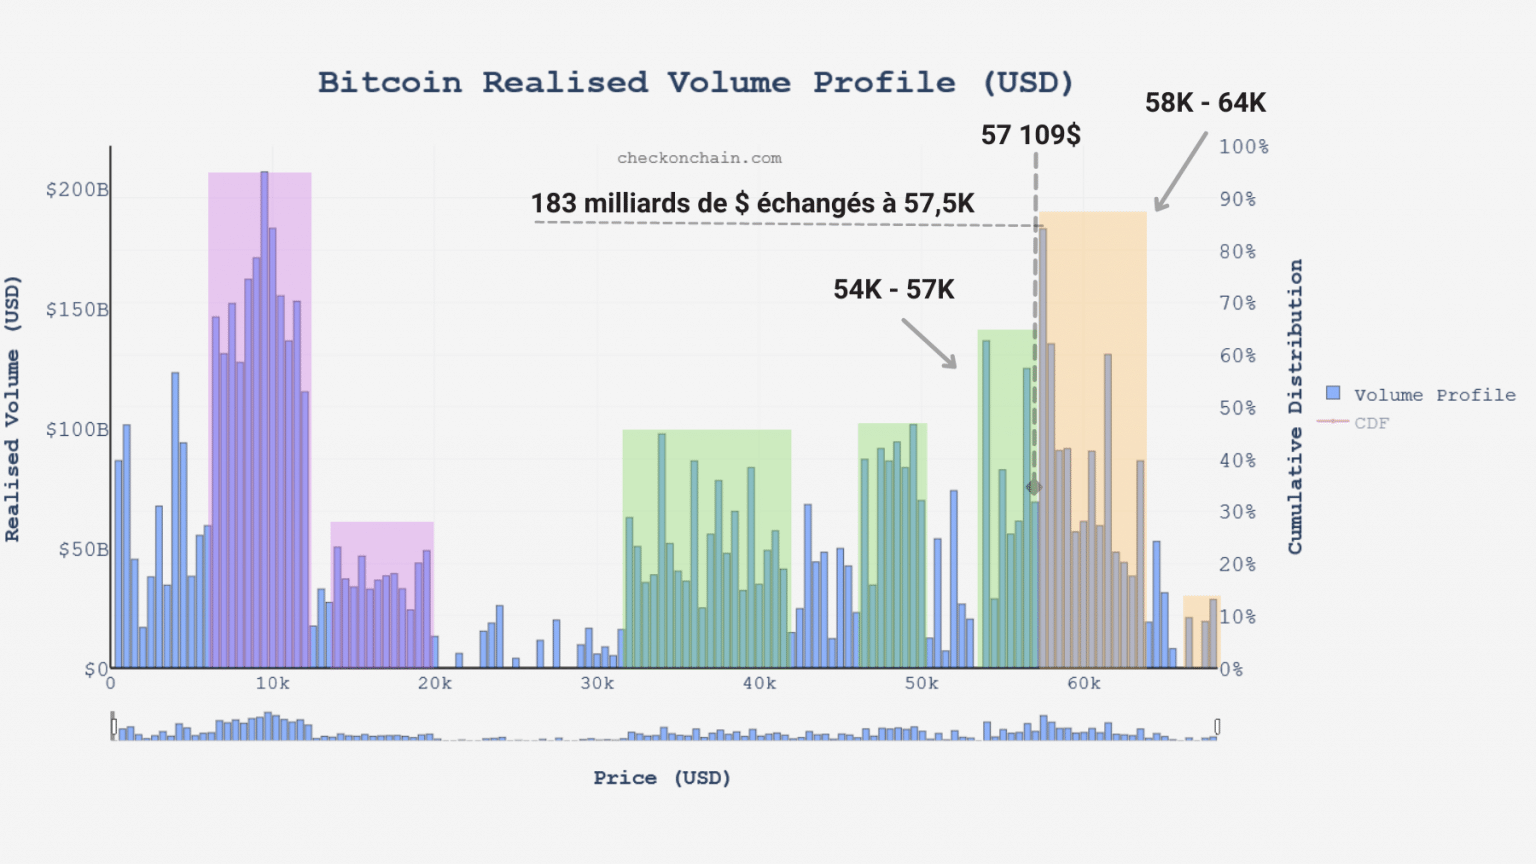 Chart des realisierten Volumens von Bitcoin (BTC) (Quelle: checkonchain.com)